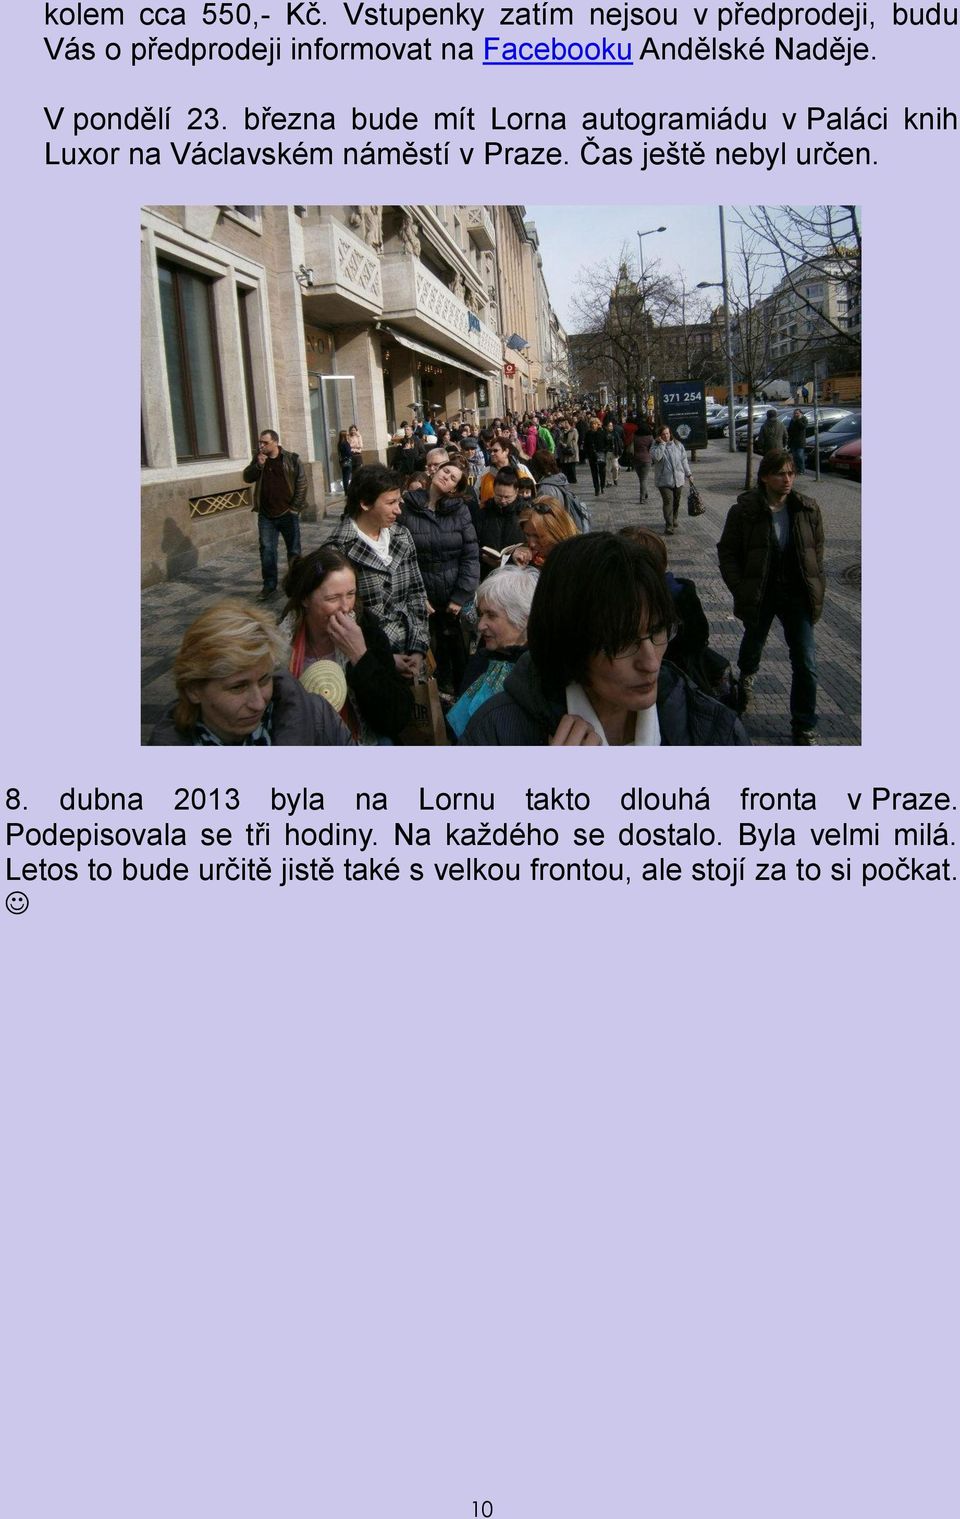 V pondělí 23. března bude mít Lorna autogramiádu v Paláci knih Luxor na Václavském náměstí v Praze.